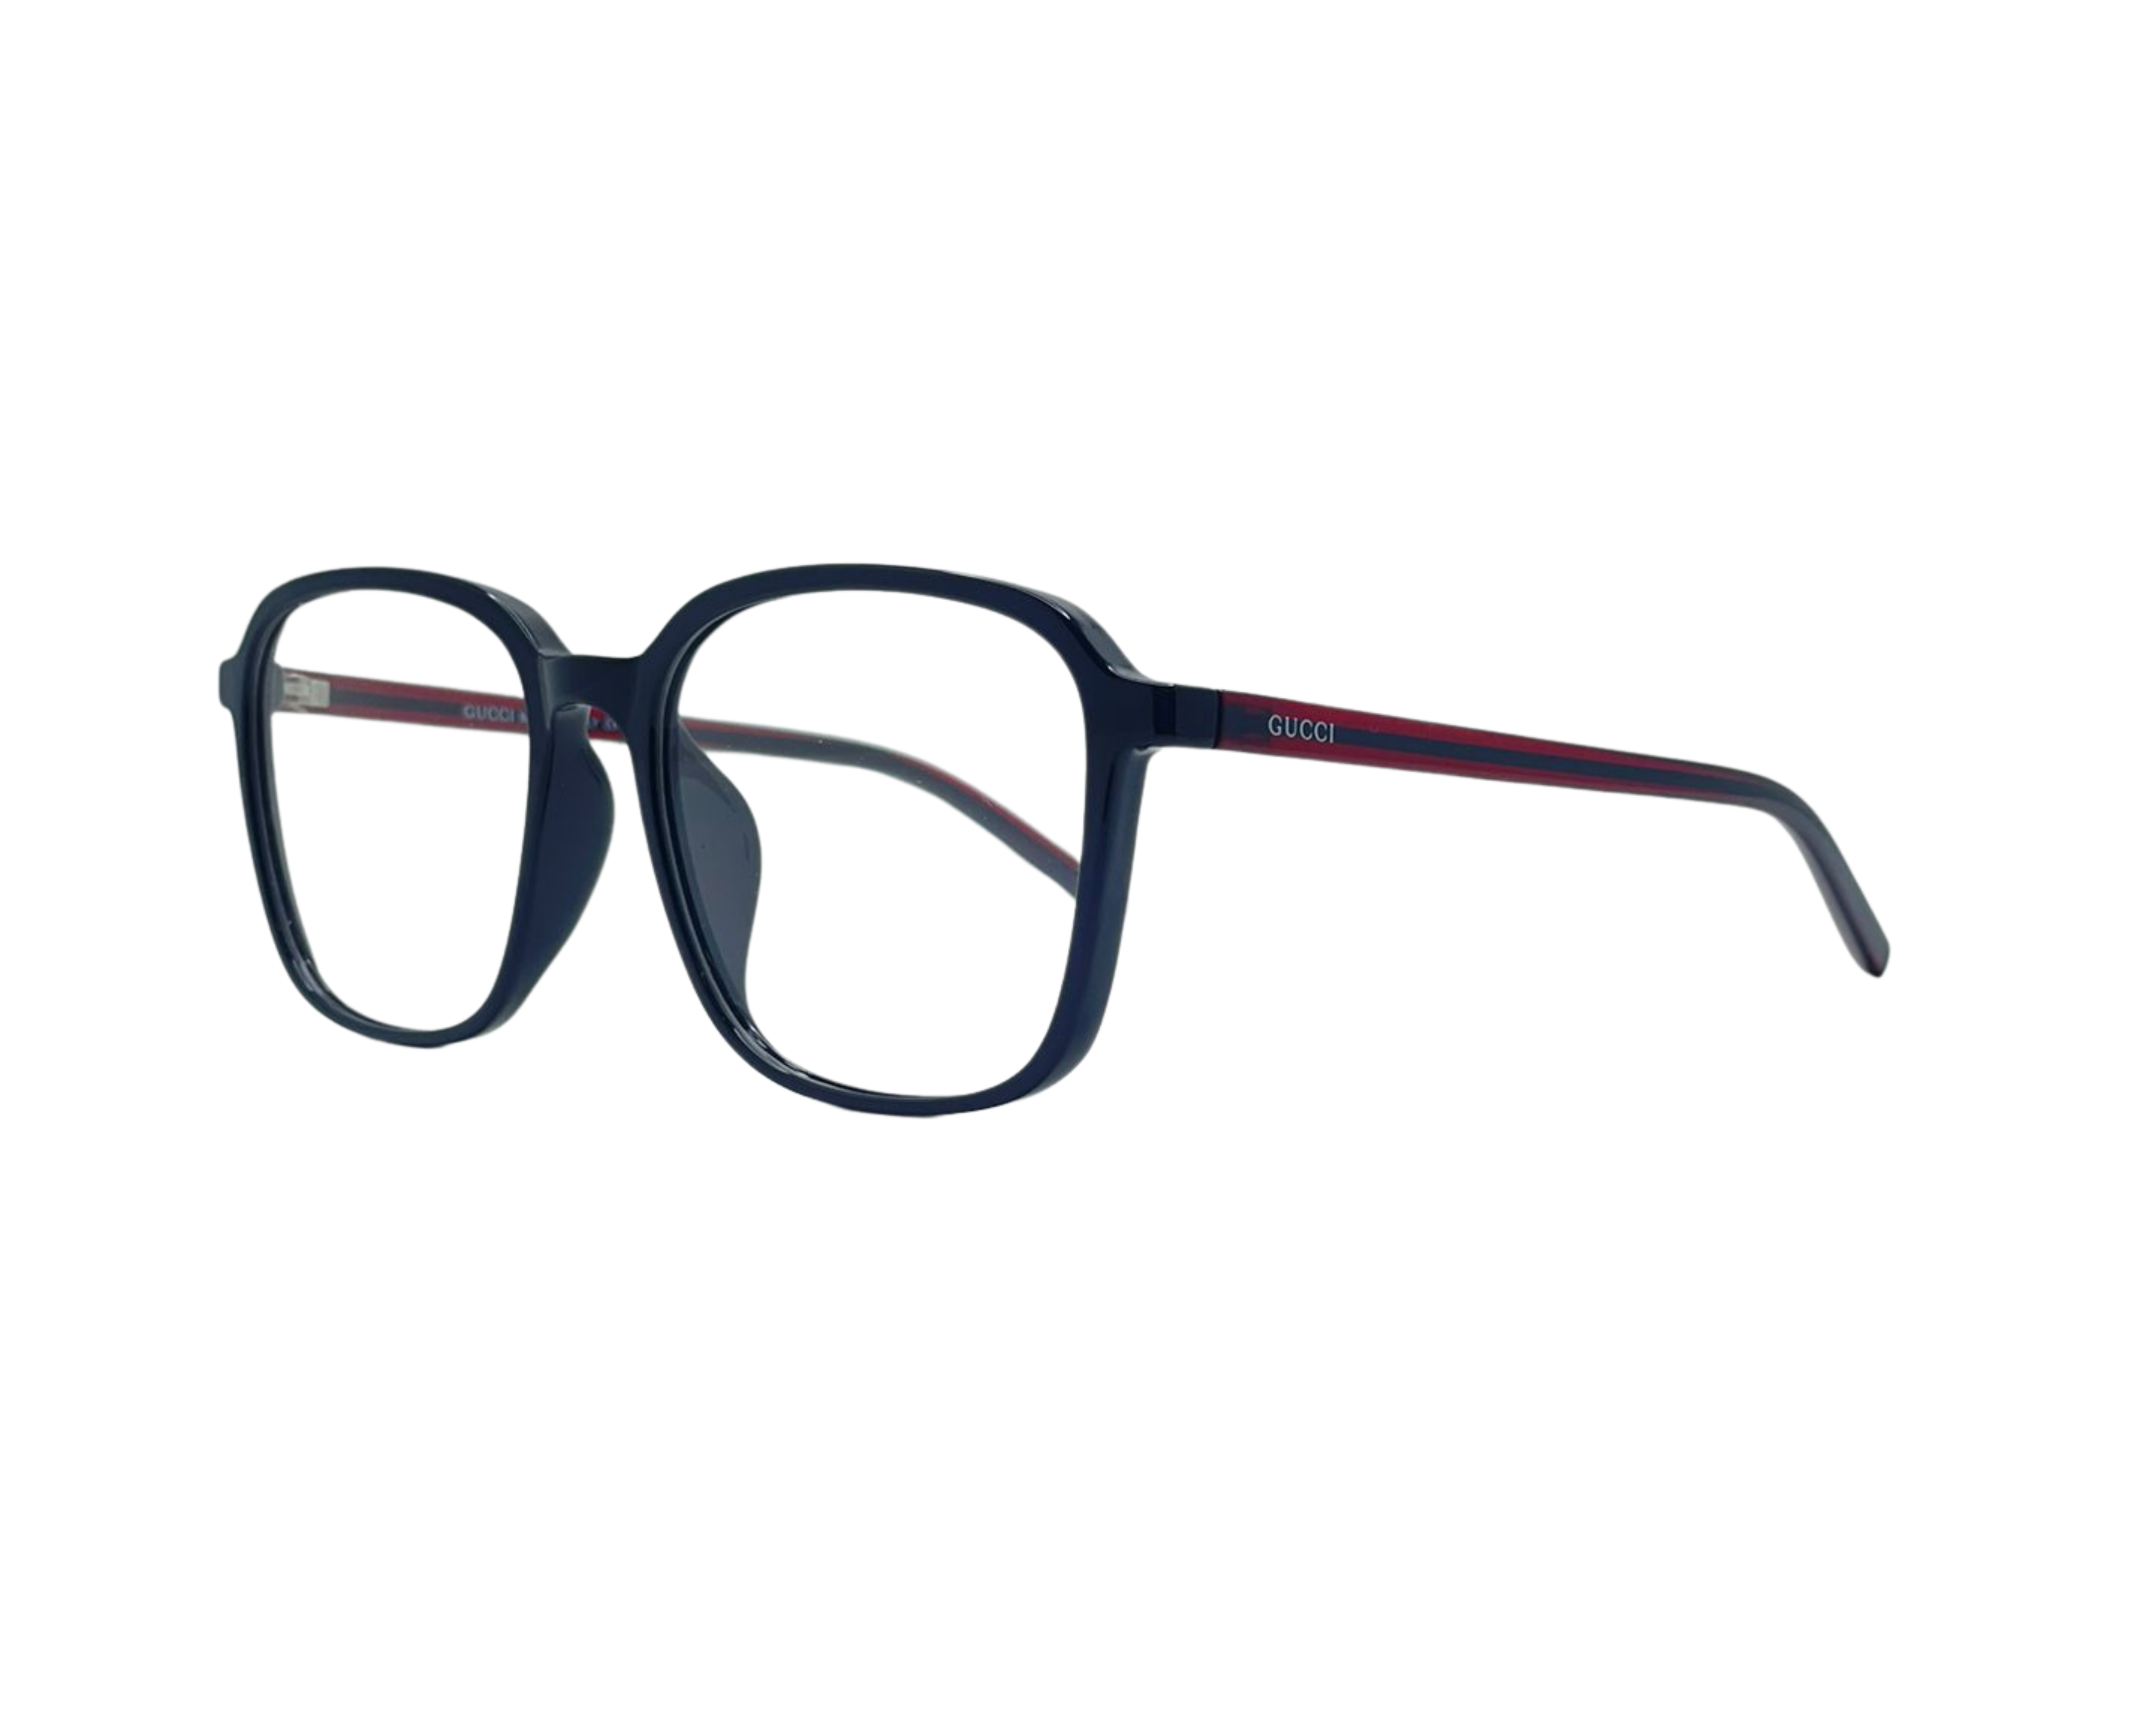 NS Classic - 0809 - Black - Eyeglasses